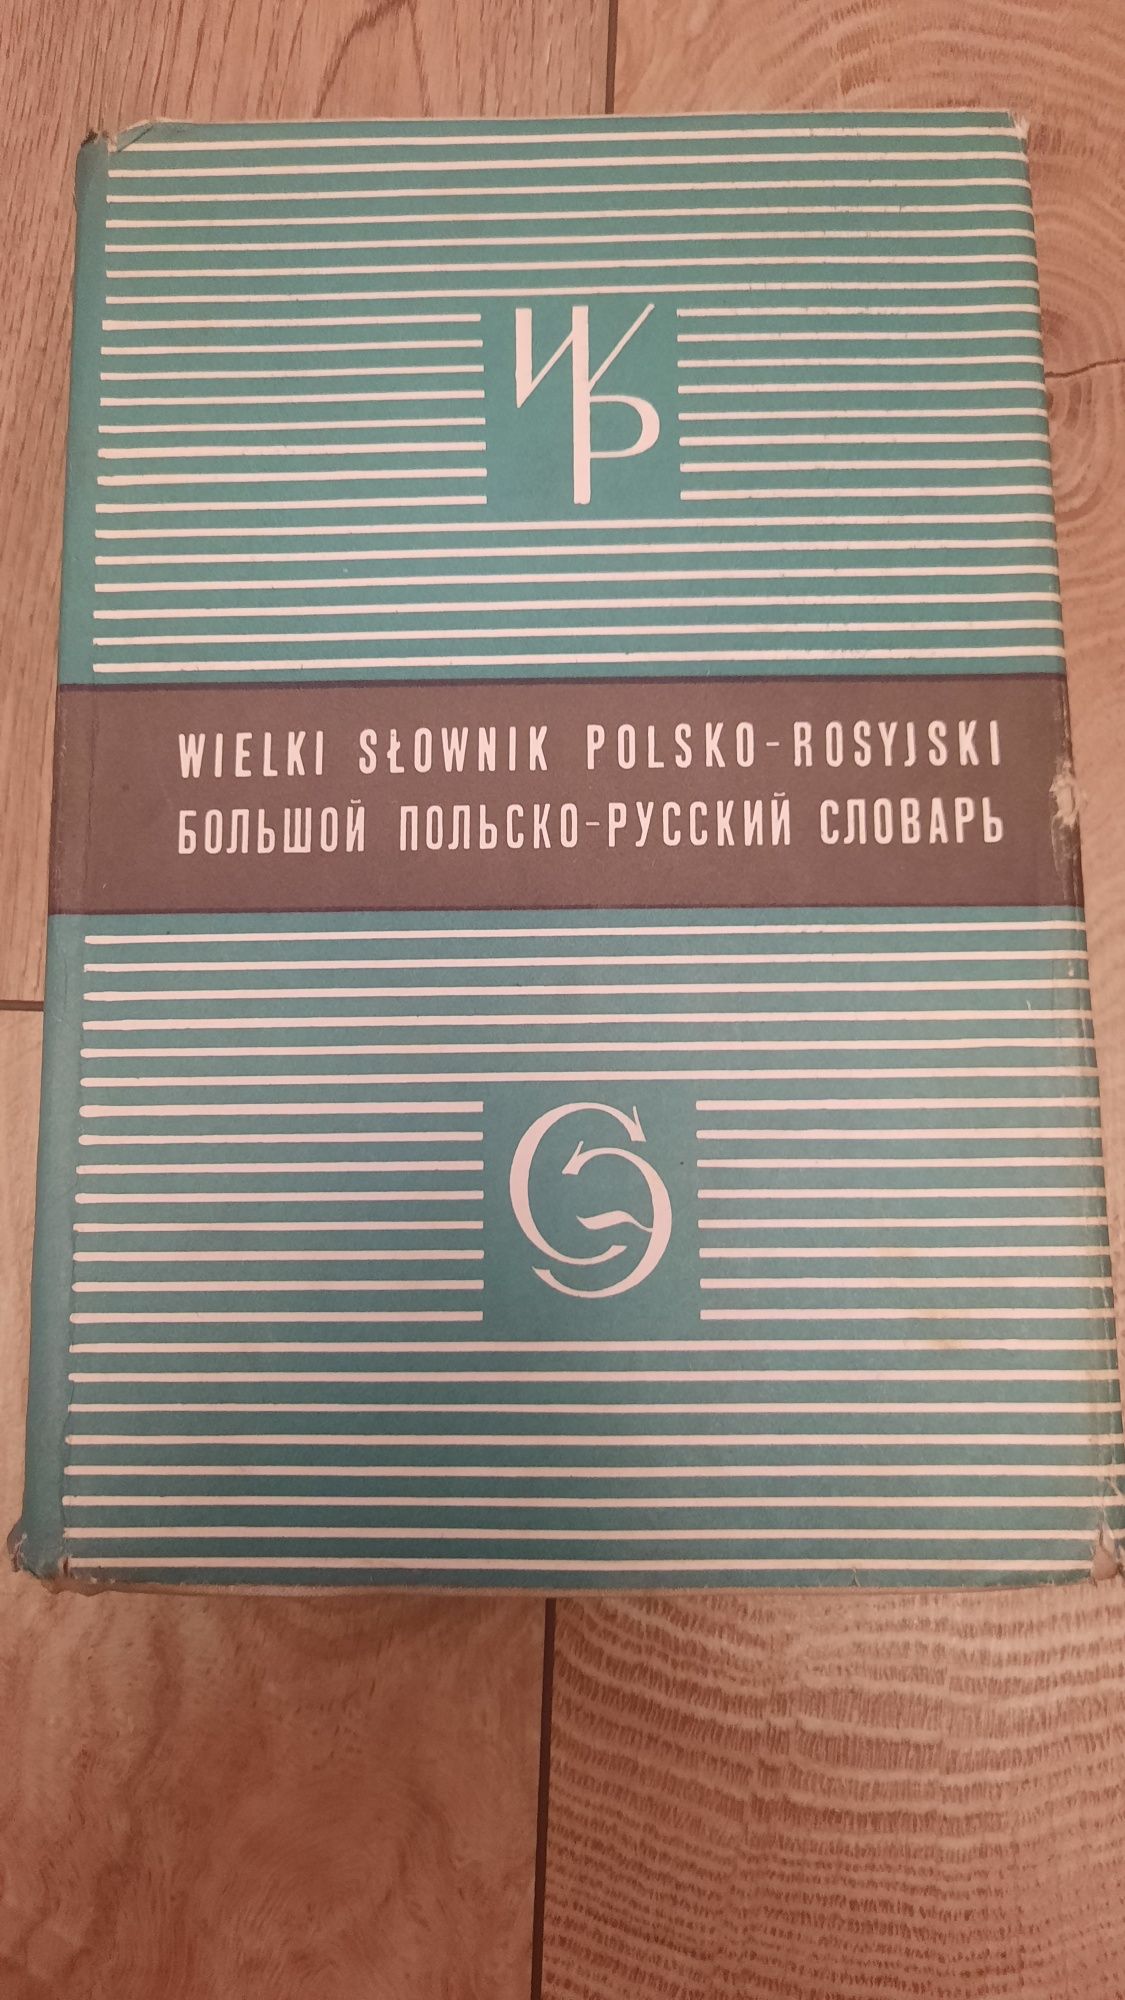 Słowniki: Rosyjsko-Polskie/ Polsko-Rosyjskie